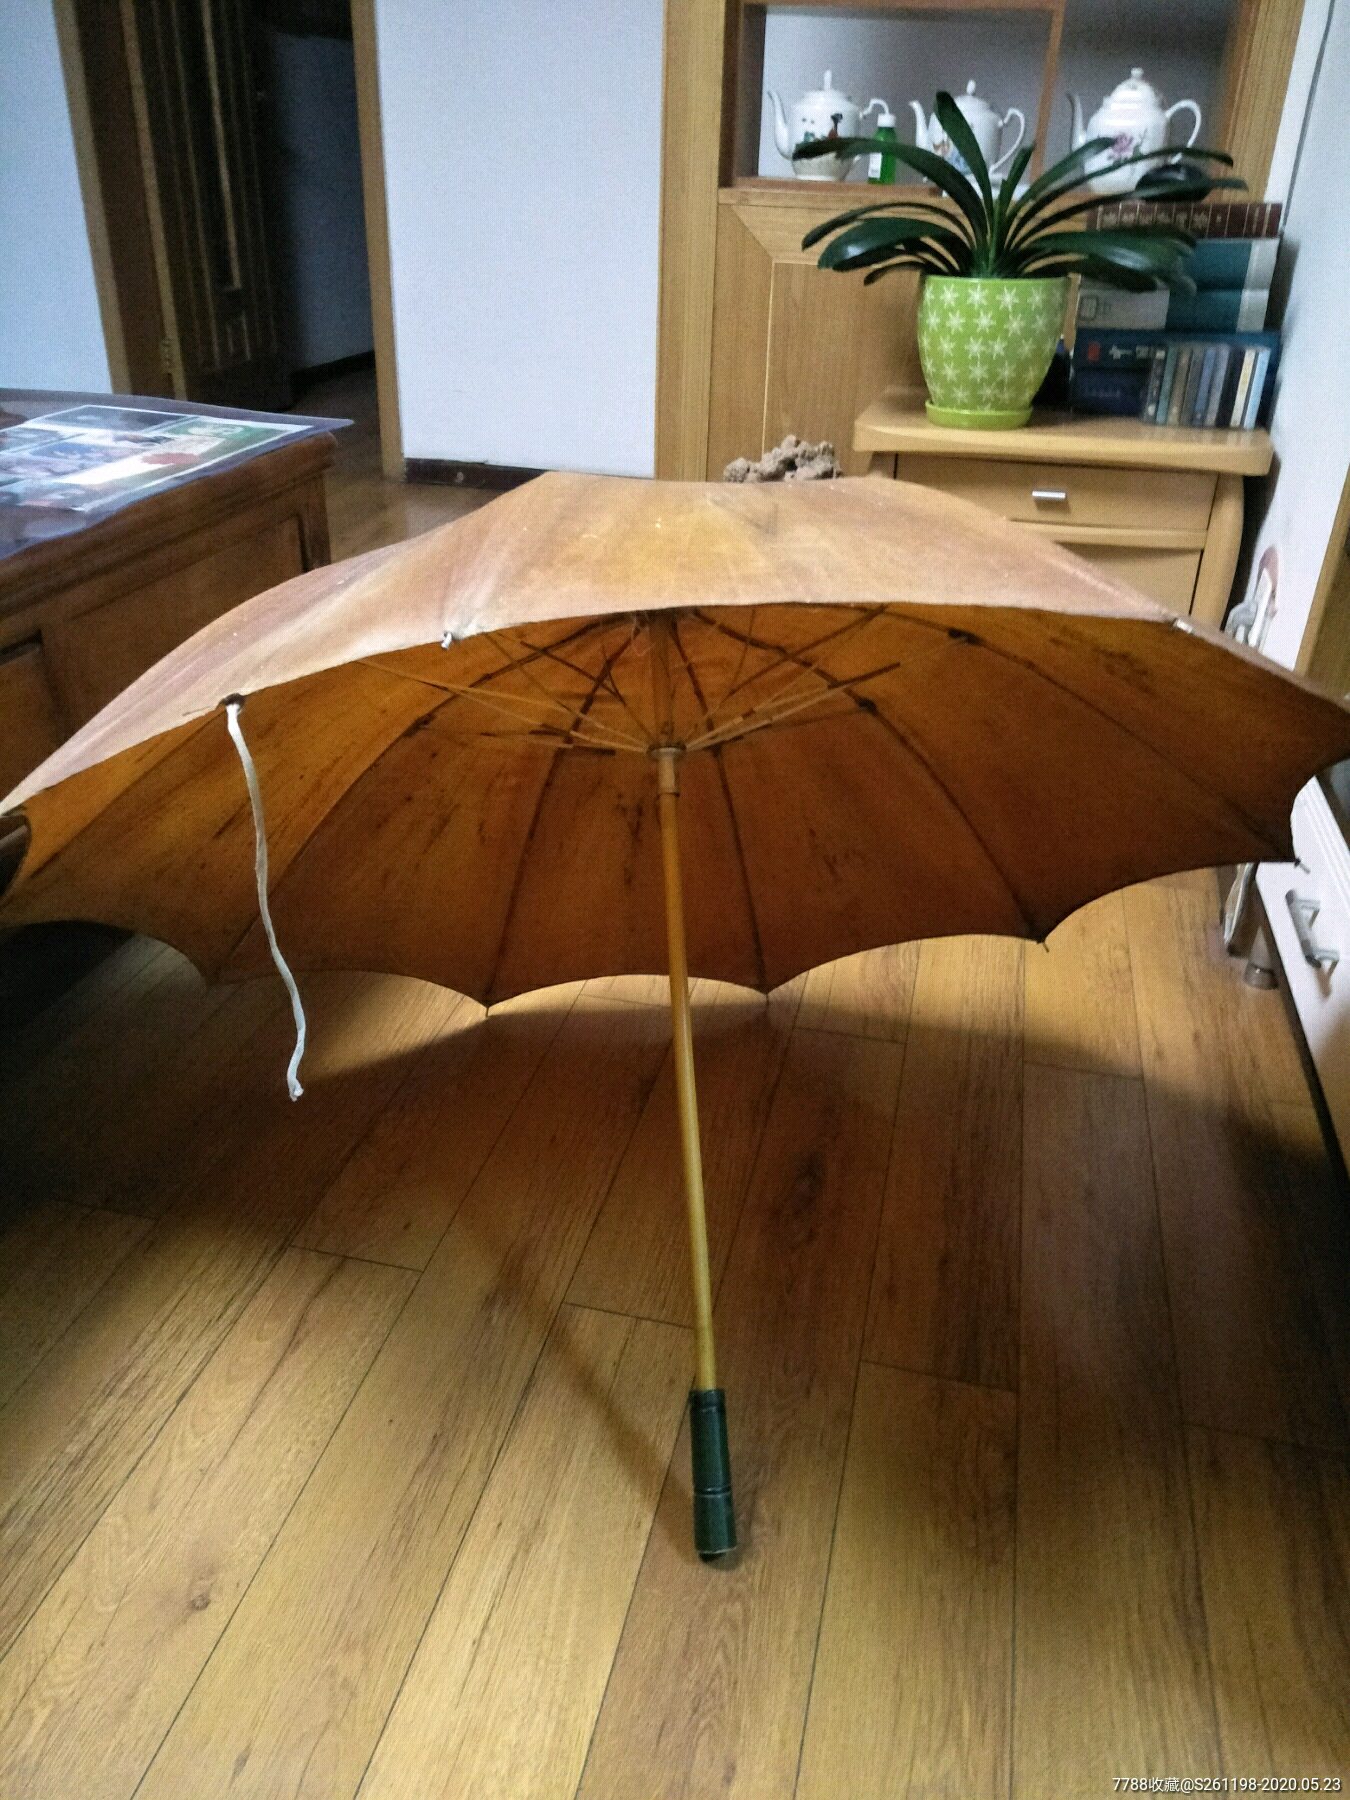 老式黄油布雨伞图片图片